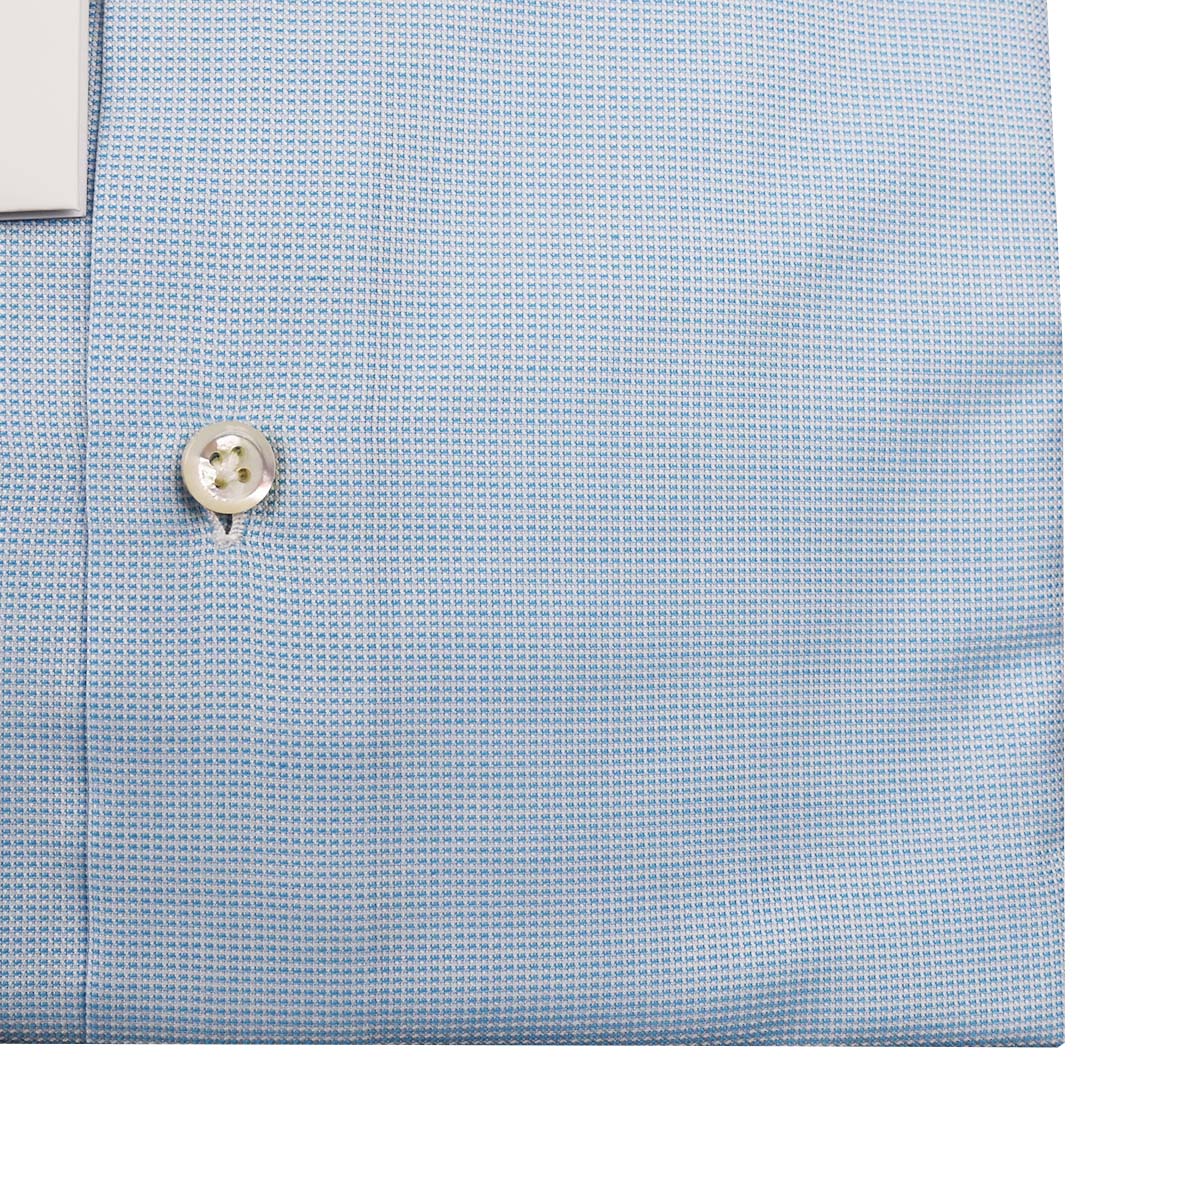 Cesare Attolini hvid lys blå bomuldskjorte